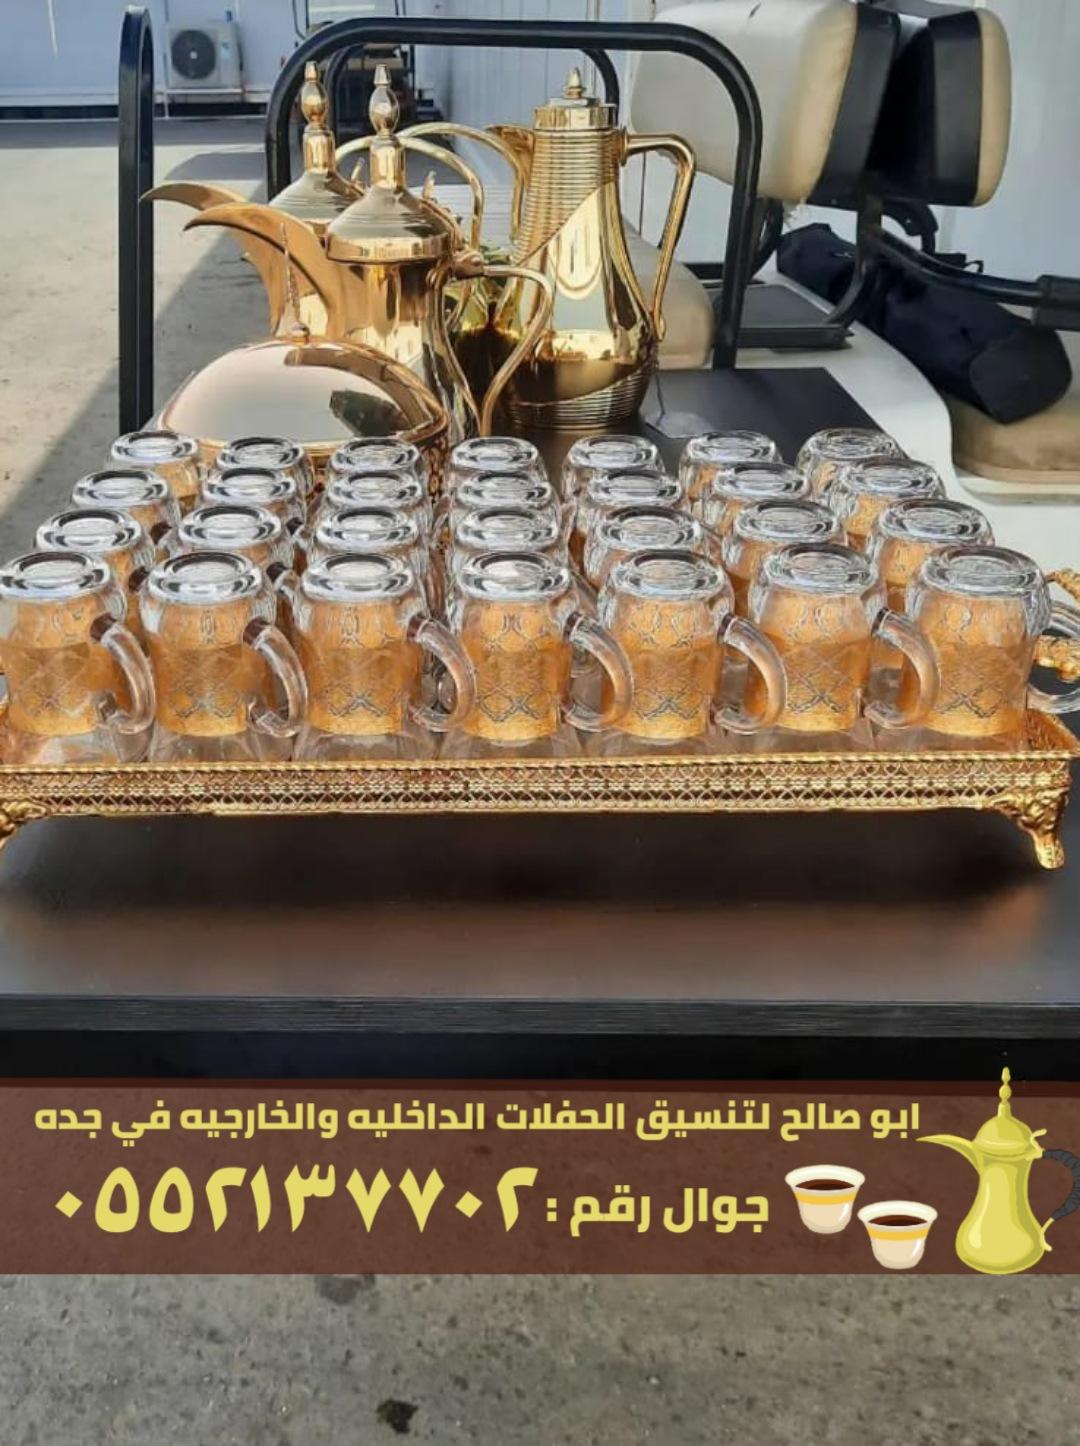 صبابين قهوة مباشرين في جدة,0552137702 140313777